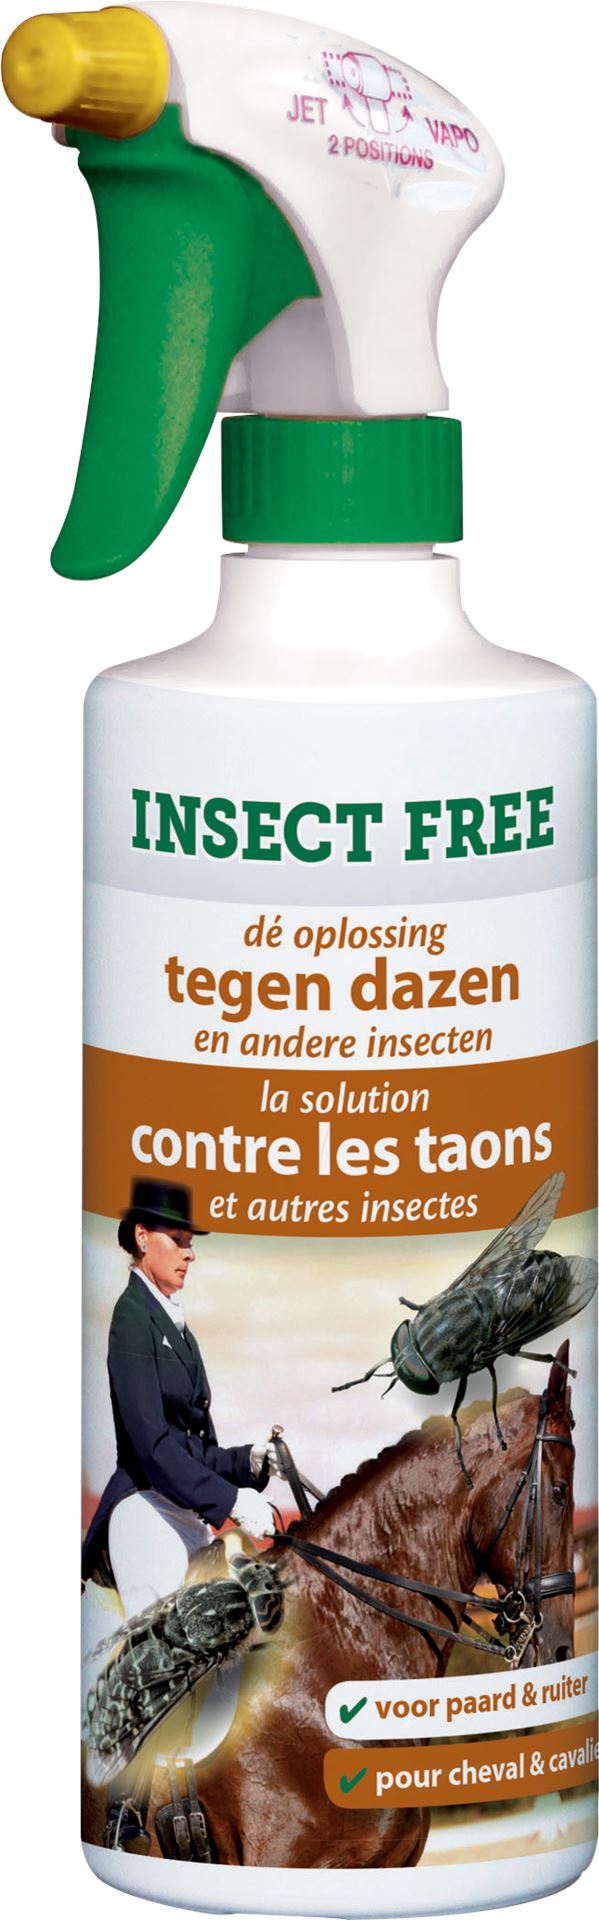 Insect-free-500ml-insectenwerende-spray-tegen-dazen-en-andere-insecten